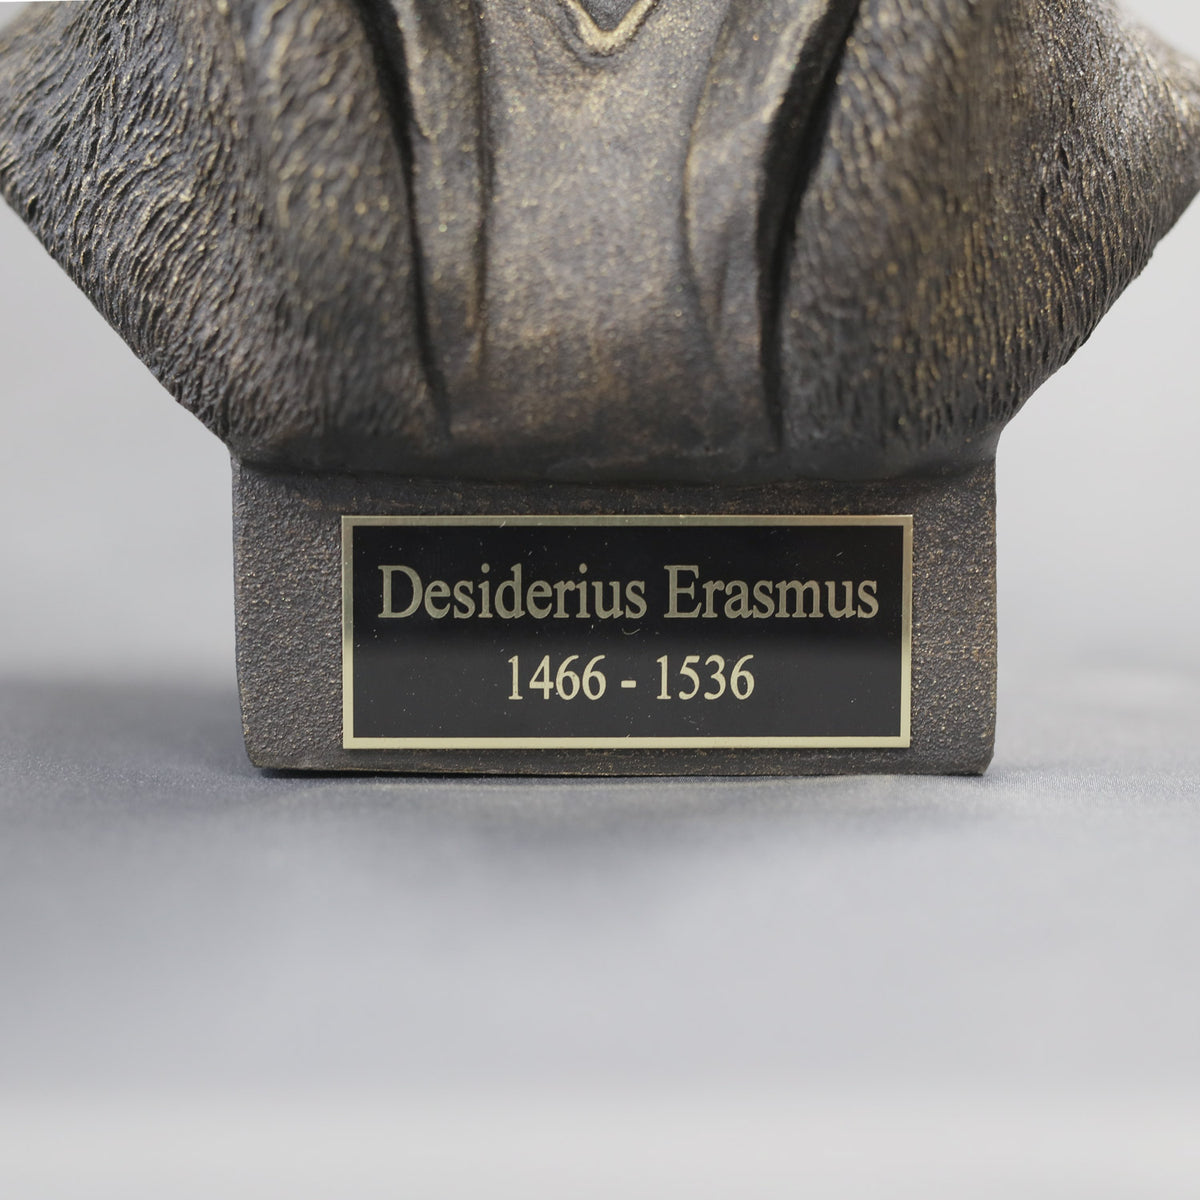 Desiderius Erasmus - Sculpture